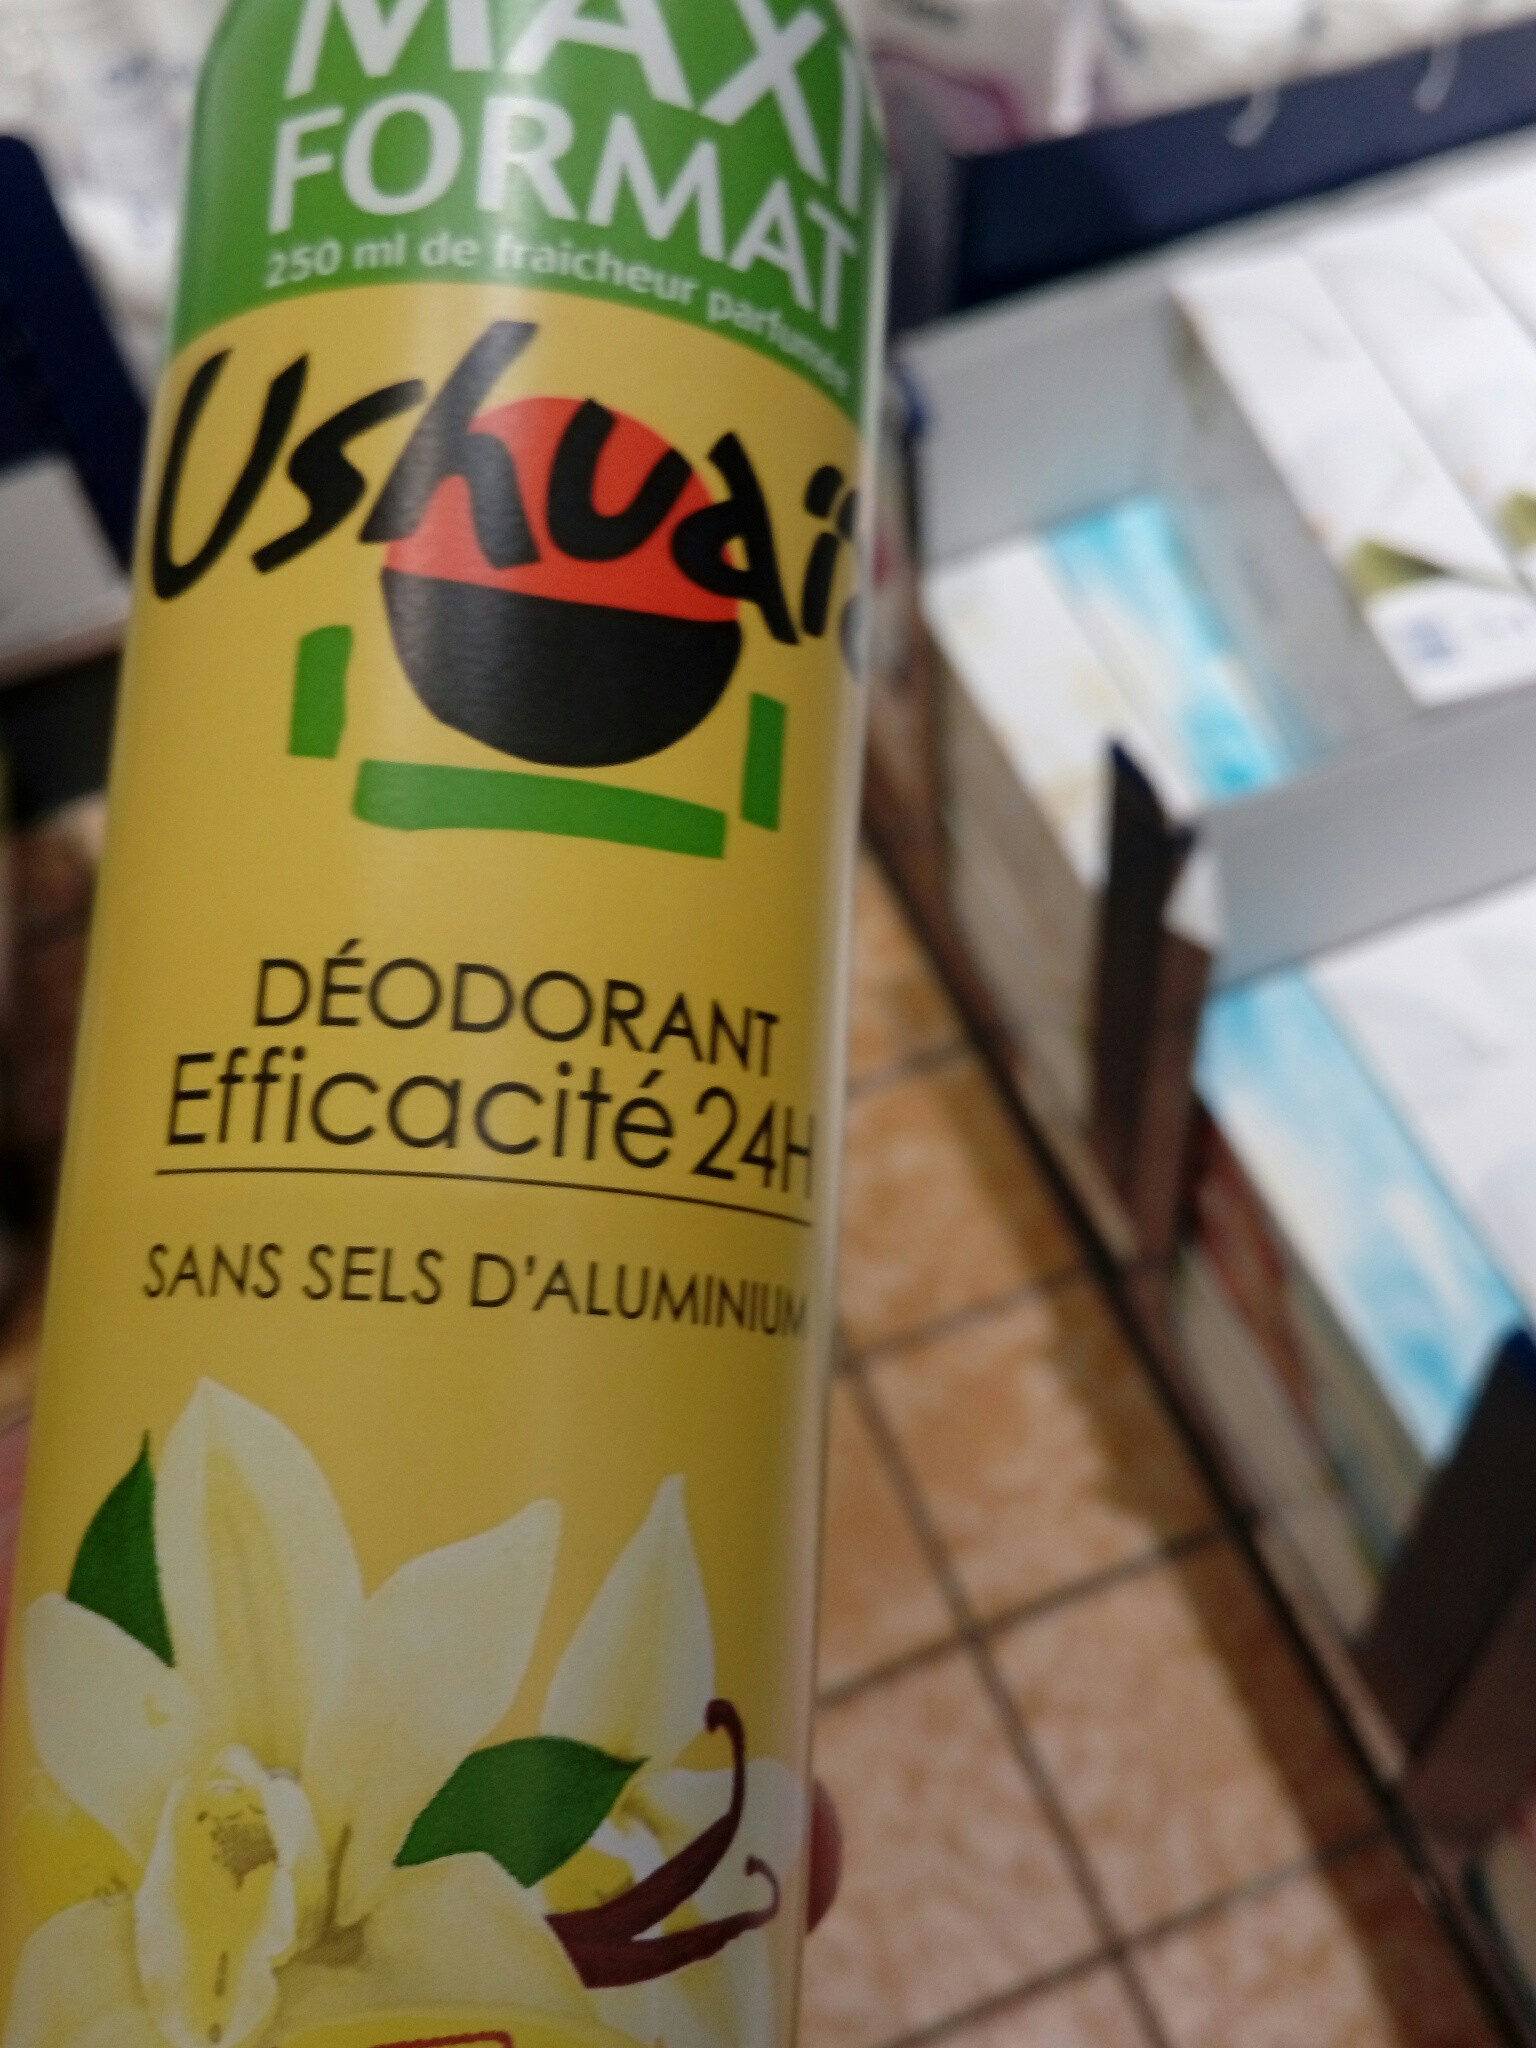 Ushuaia déodorant efficacité 24 h - Продукт - fr